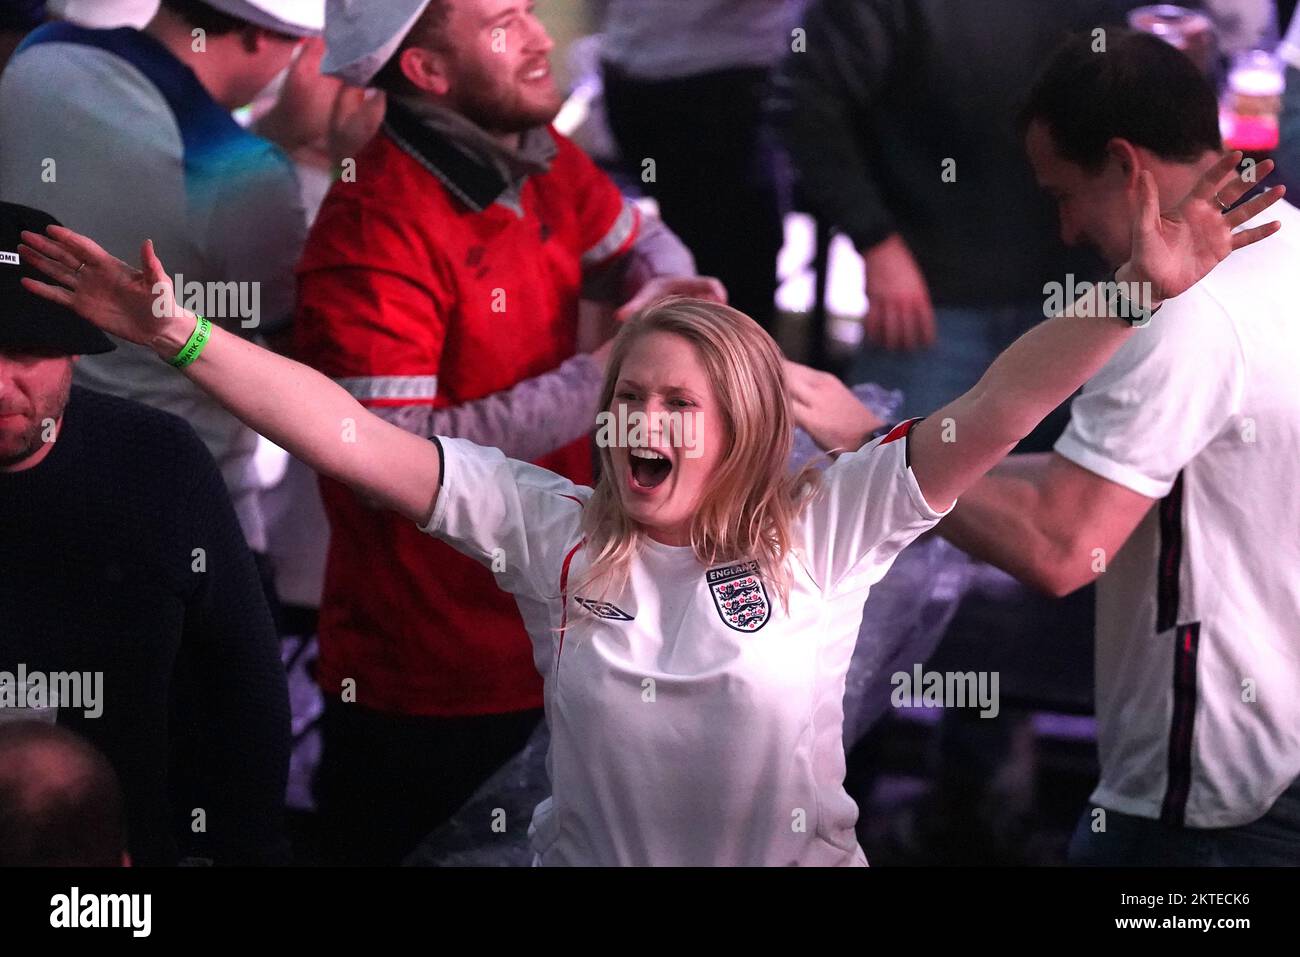 Englische Fans feiern im BoxPark Croydon während einer Vorführung des FIFA-Weltmeisterschaftsspiels der Gruppe B zwischen Wales und England. Foto: Dienstag, 29. November 2022. Stockfoto